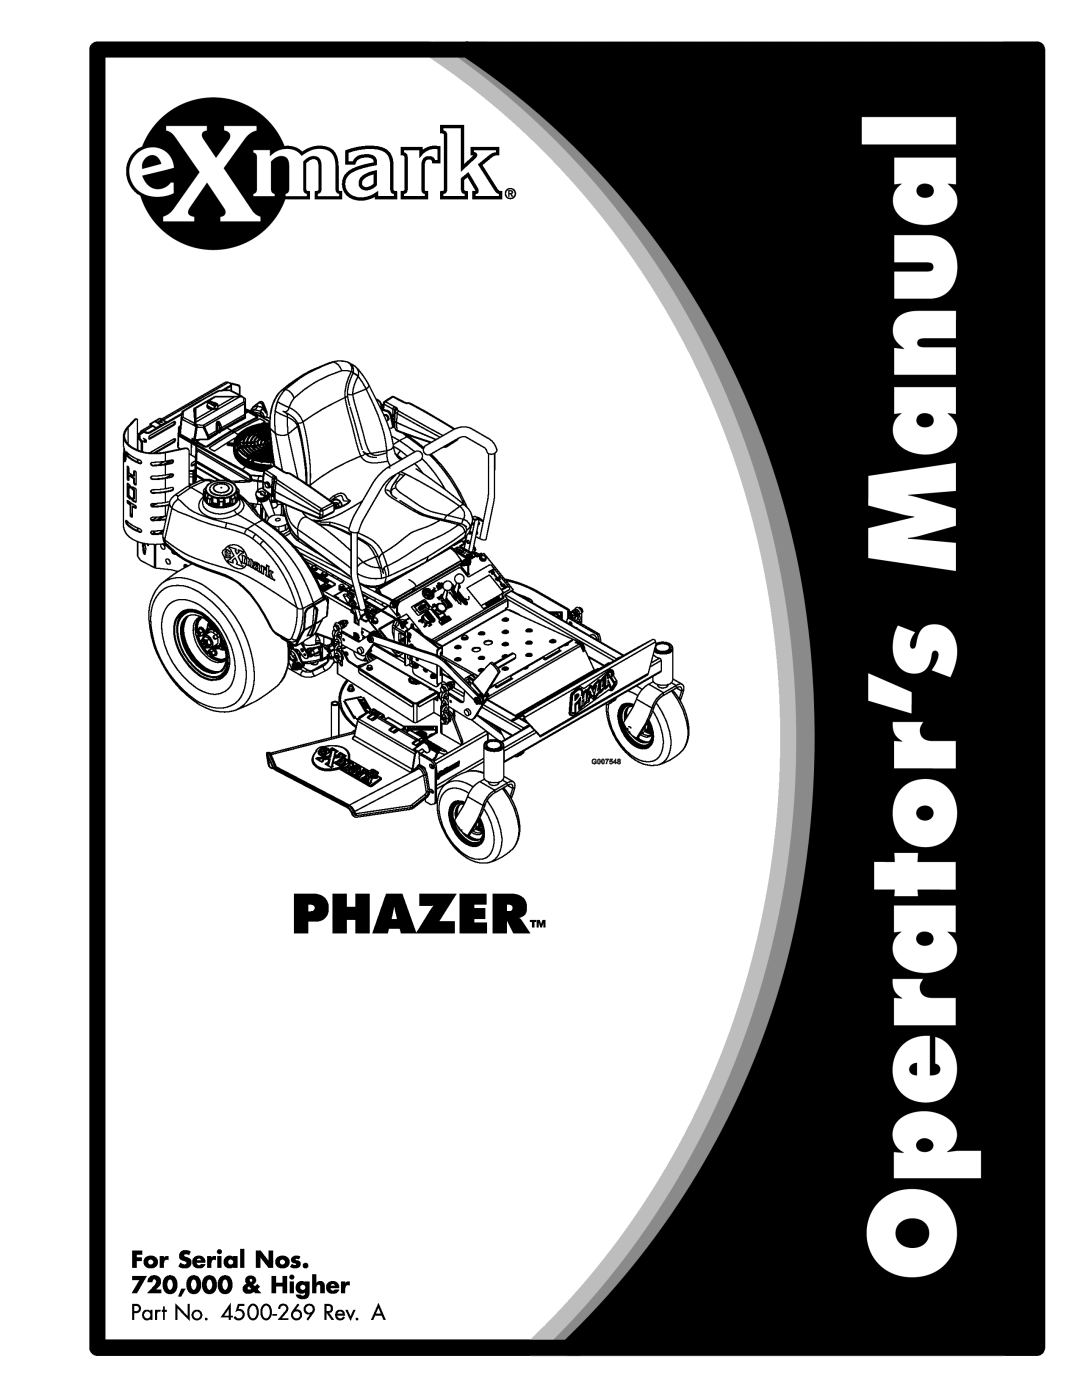 Exmark Phazer manual For Serial Nos 720,000 & Higher 